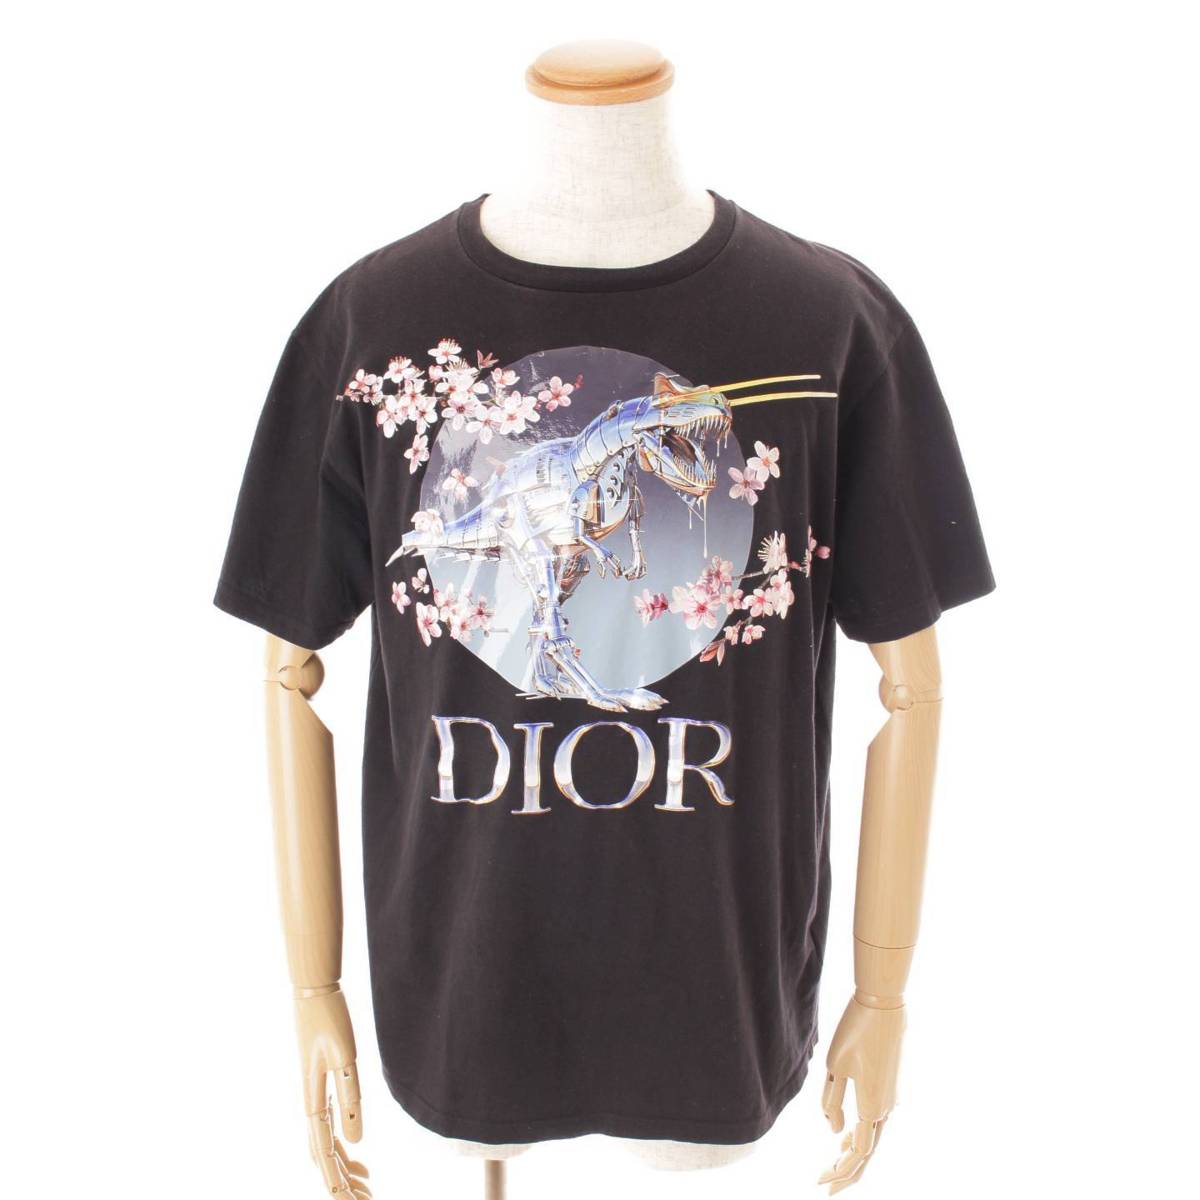 ディオール(Dior) 19SS 空山基 ダイナソー ロボ Tシャツ 